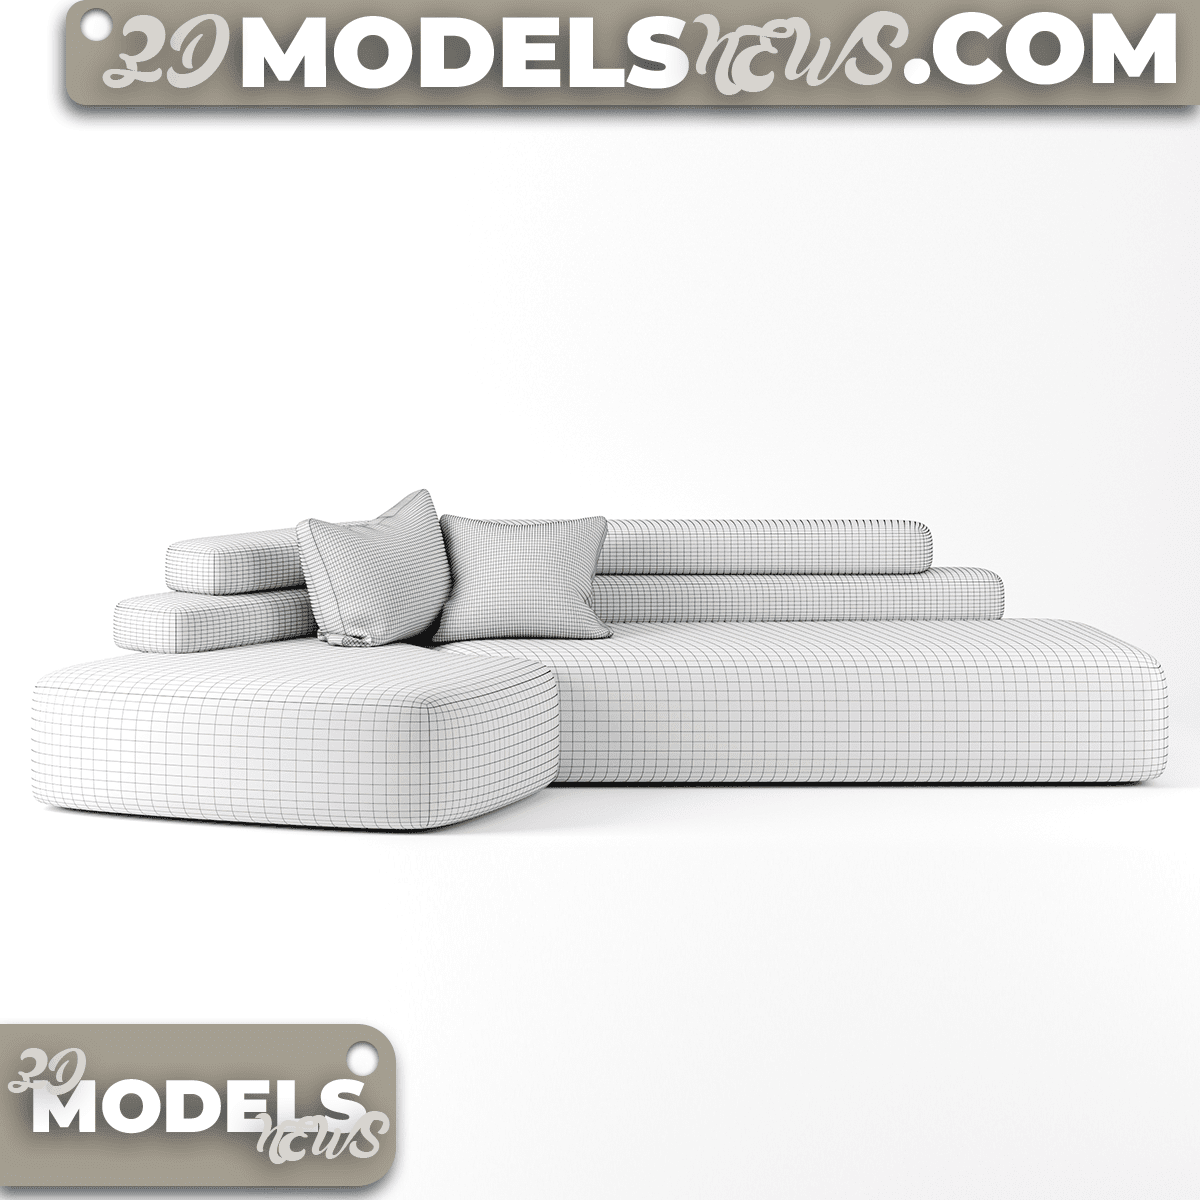 Rift Sofa Model by Moroso 2